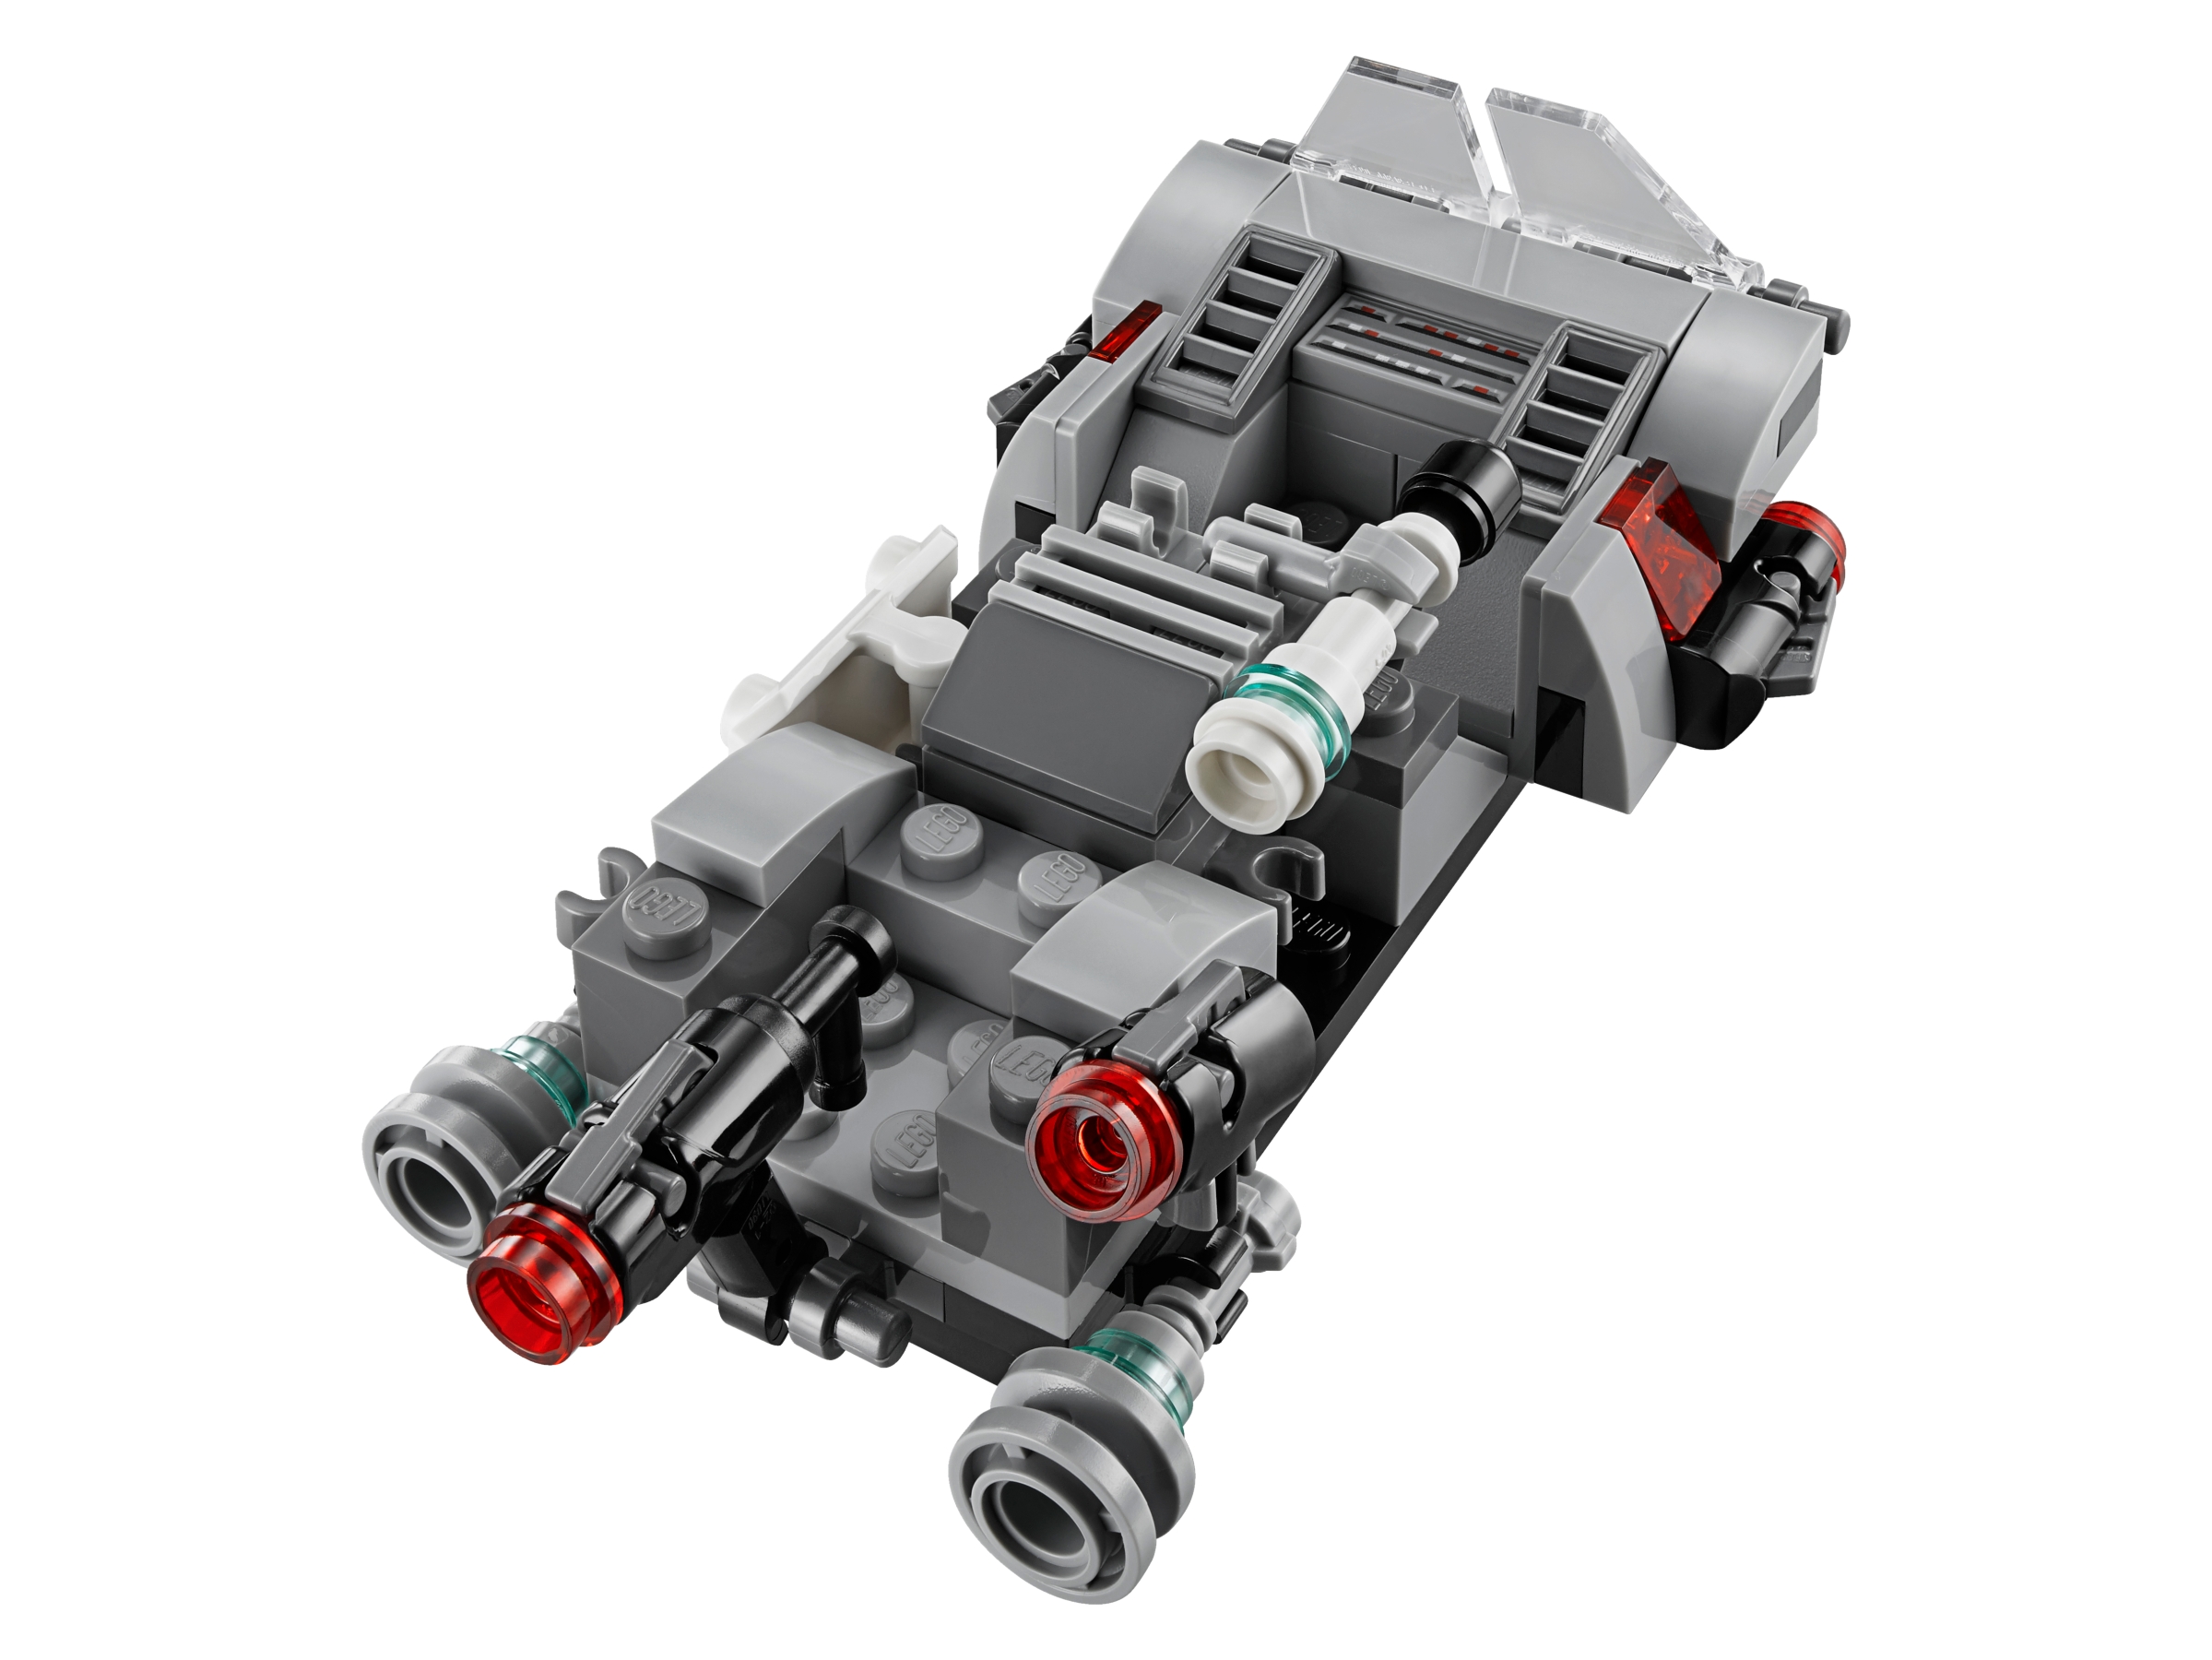 75166 for sale online LEGO Star Wars First Order Transport Speeder Battle Pack 2017